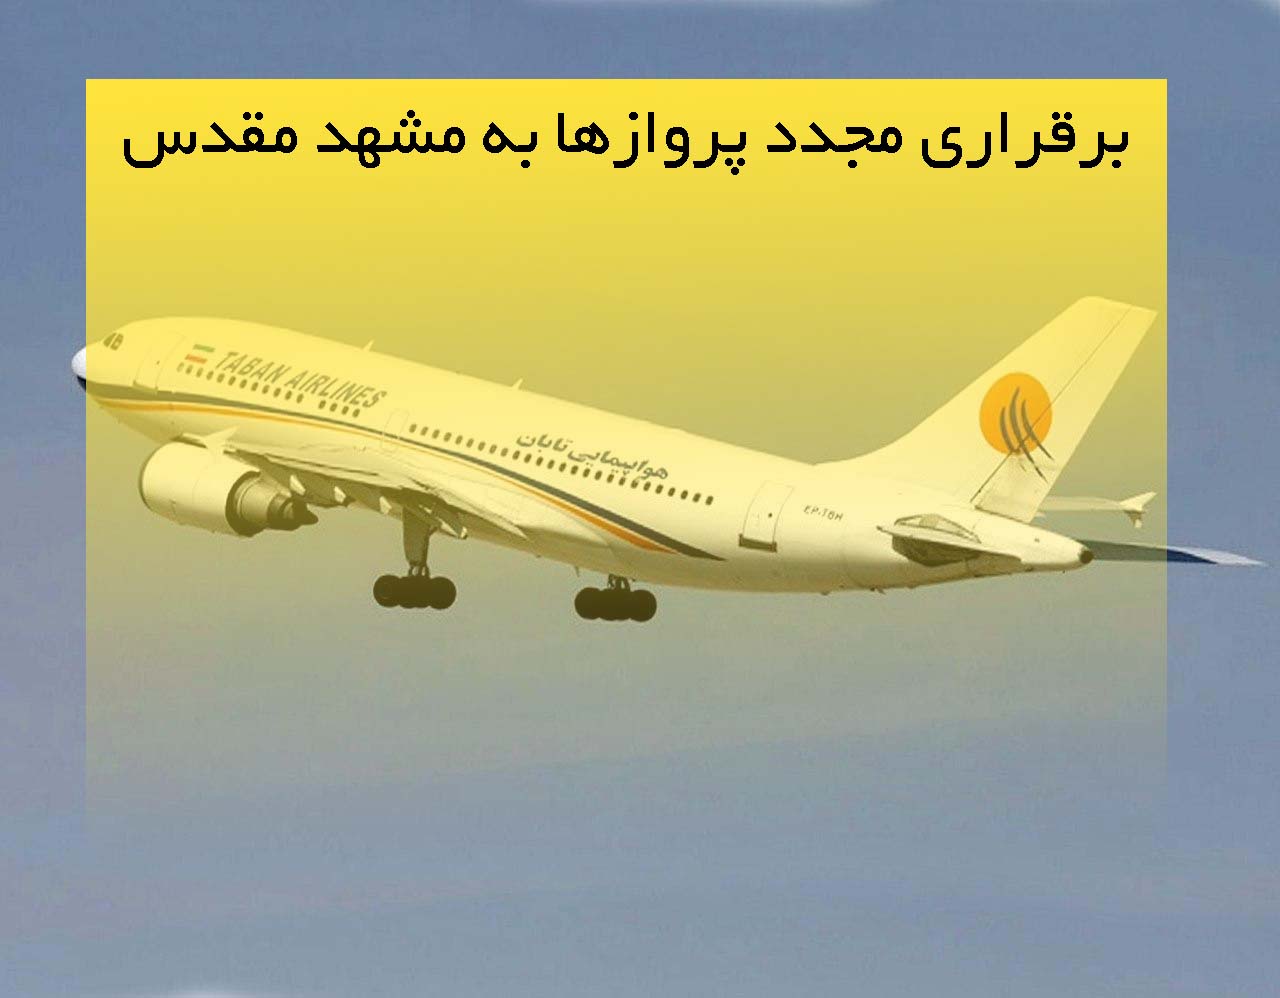 آمادگی فرودگاه کاشان برای برقراری مجدد پروازها به مشهد مقدس